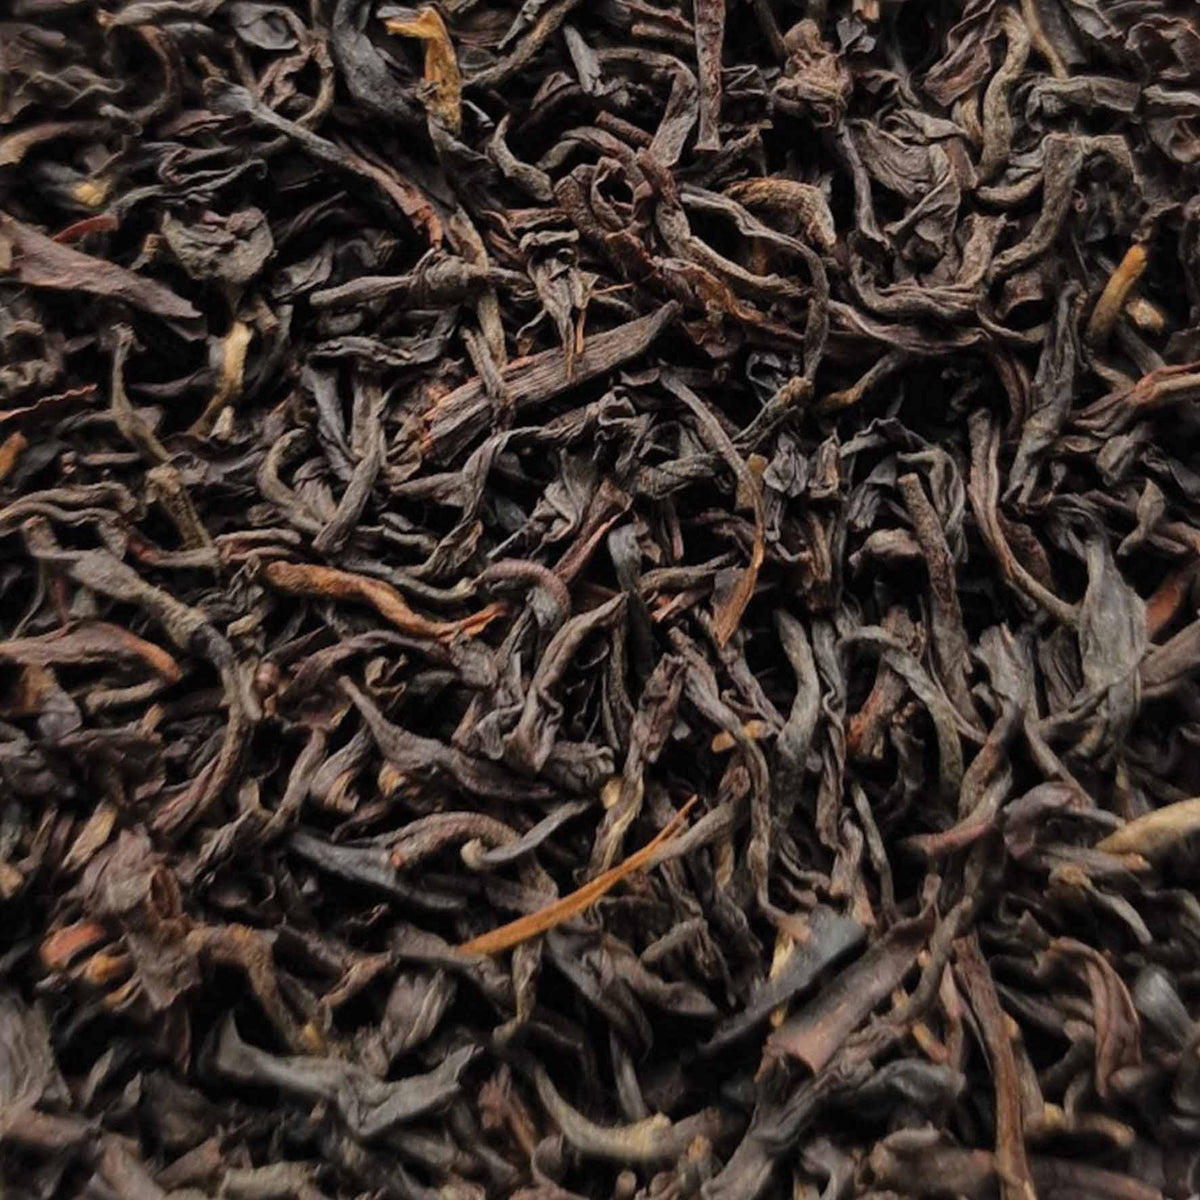 Premium Assam Black Estate Loose Leaf Tea - tea leaves